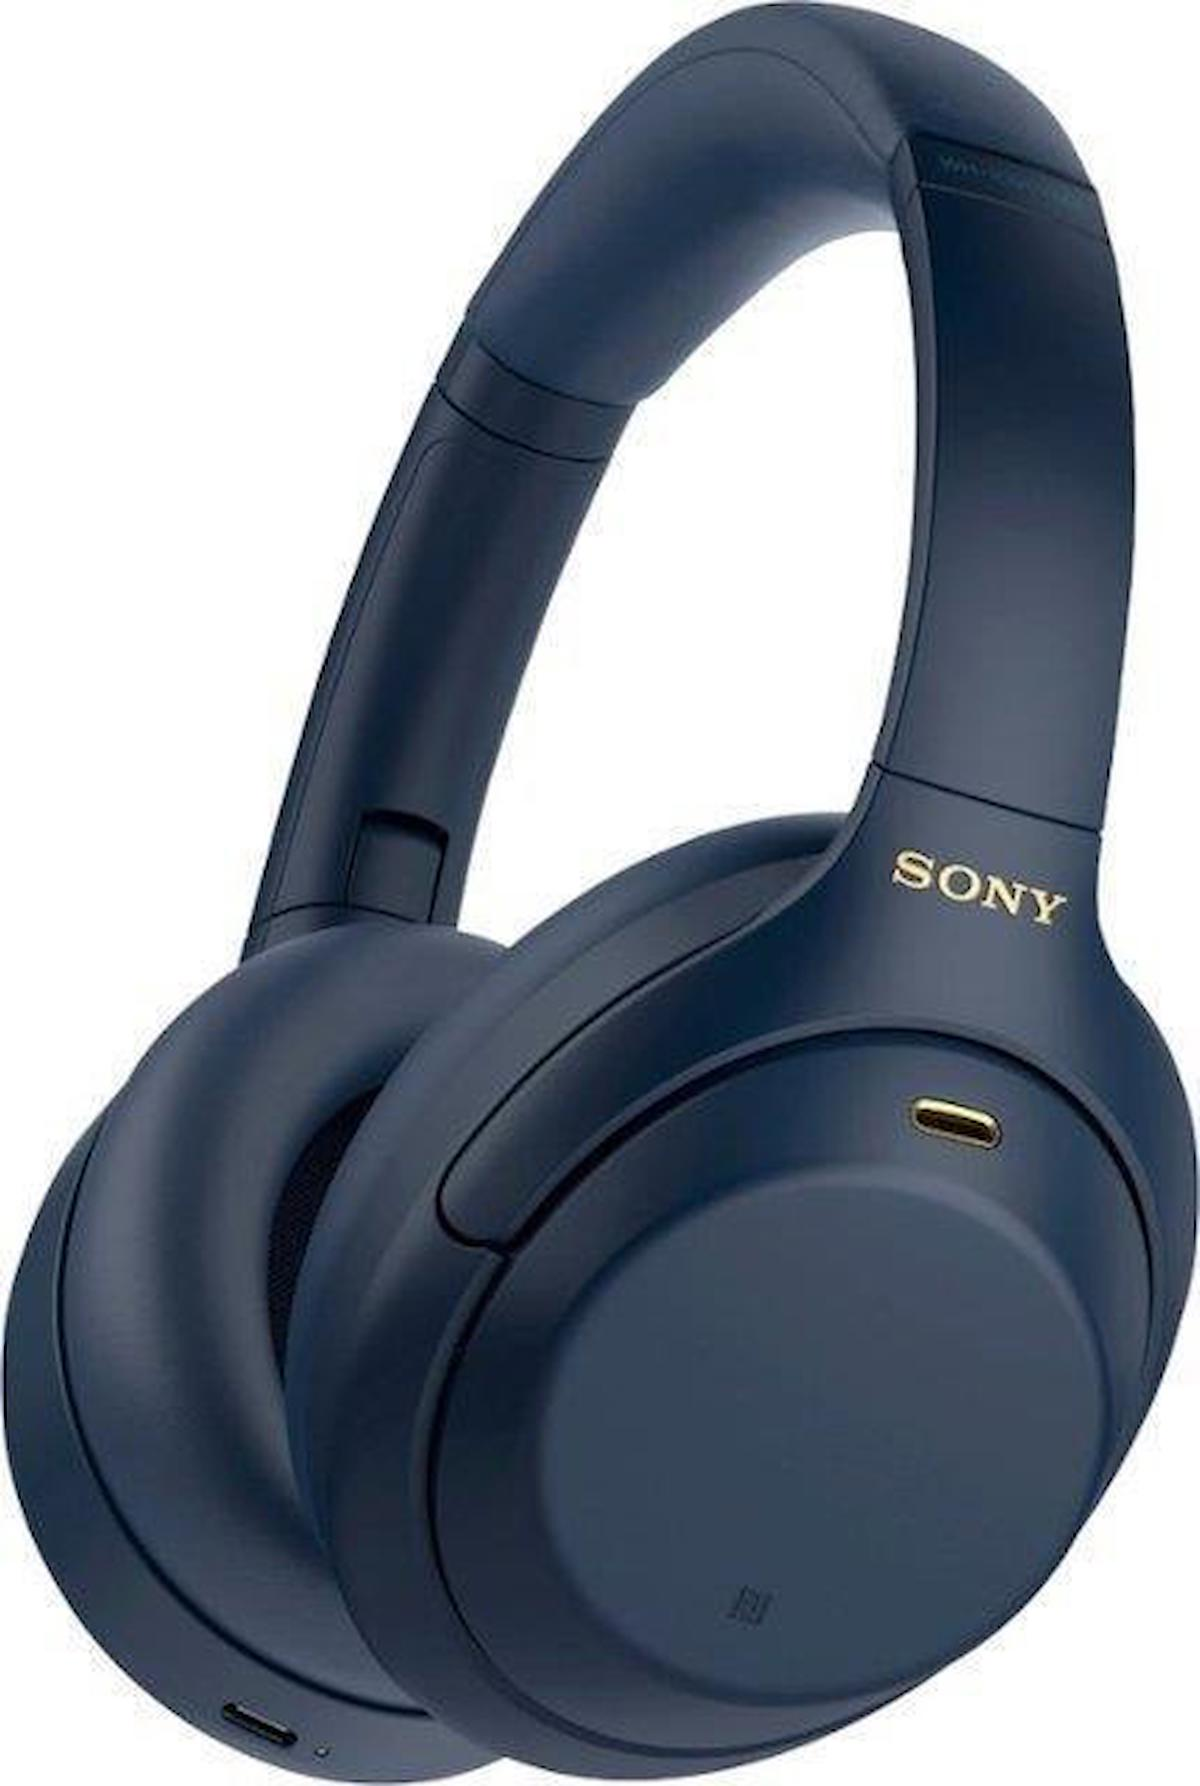 Sony WH-1000XM4 5.0 Gürültü Önleyici Kablosuz Kulak İçi Bluetooth Kulaklık Mavi